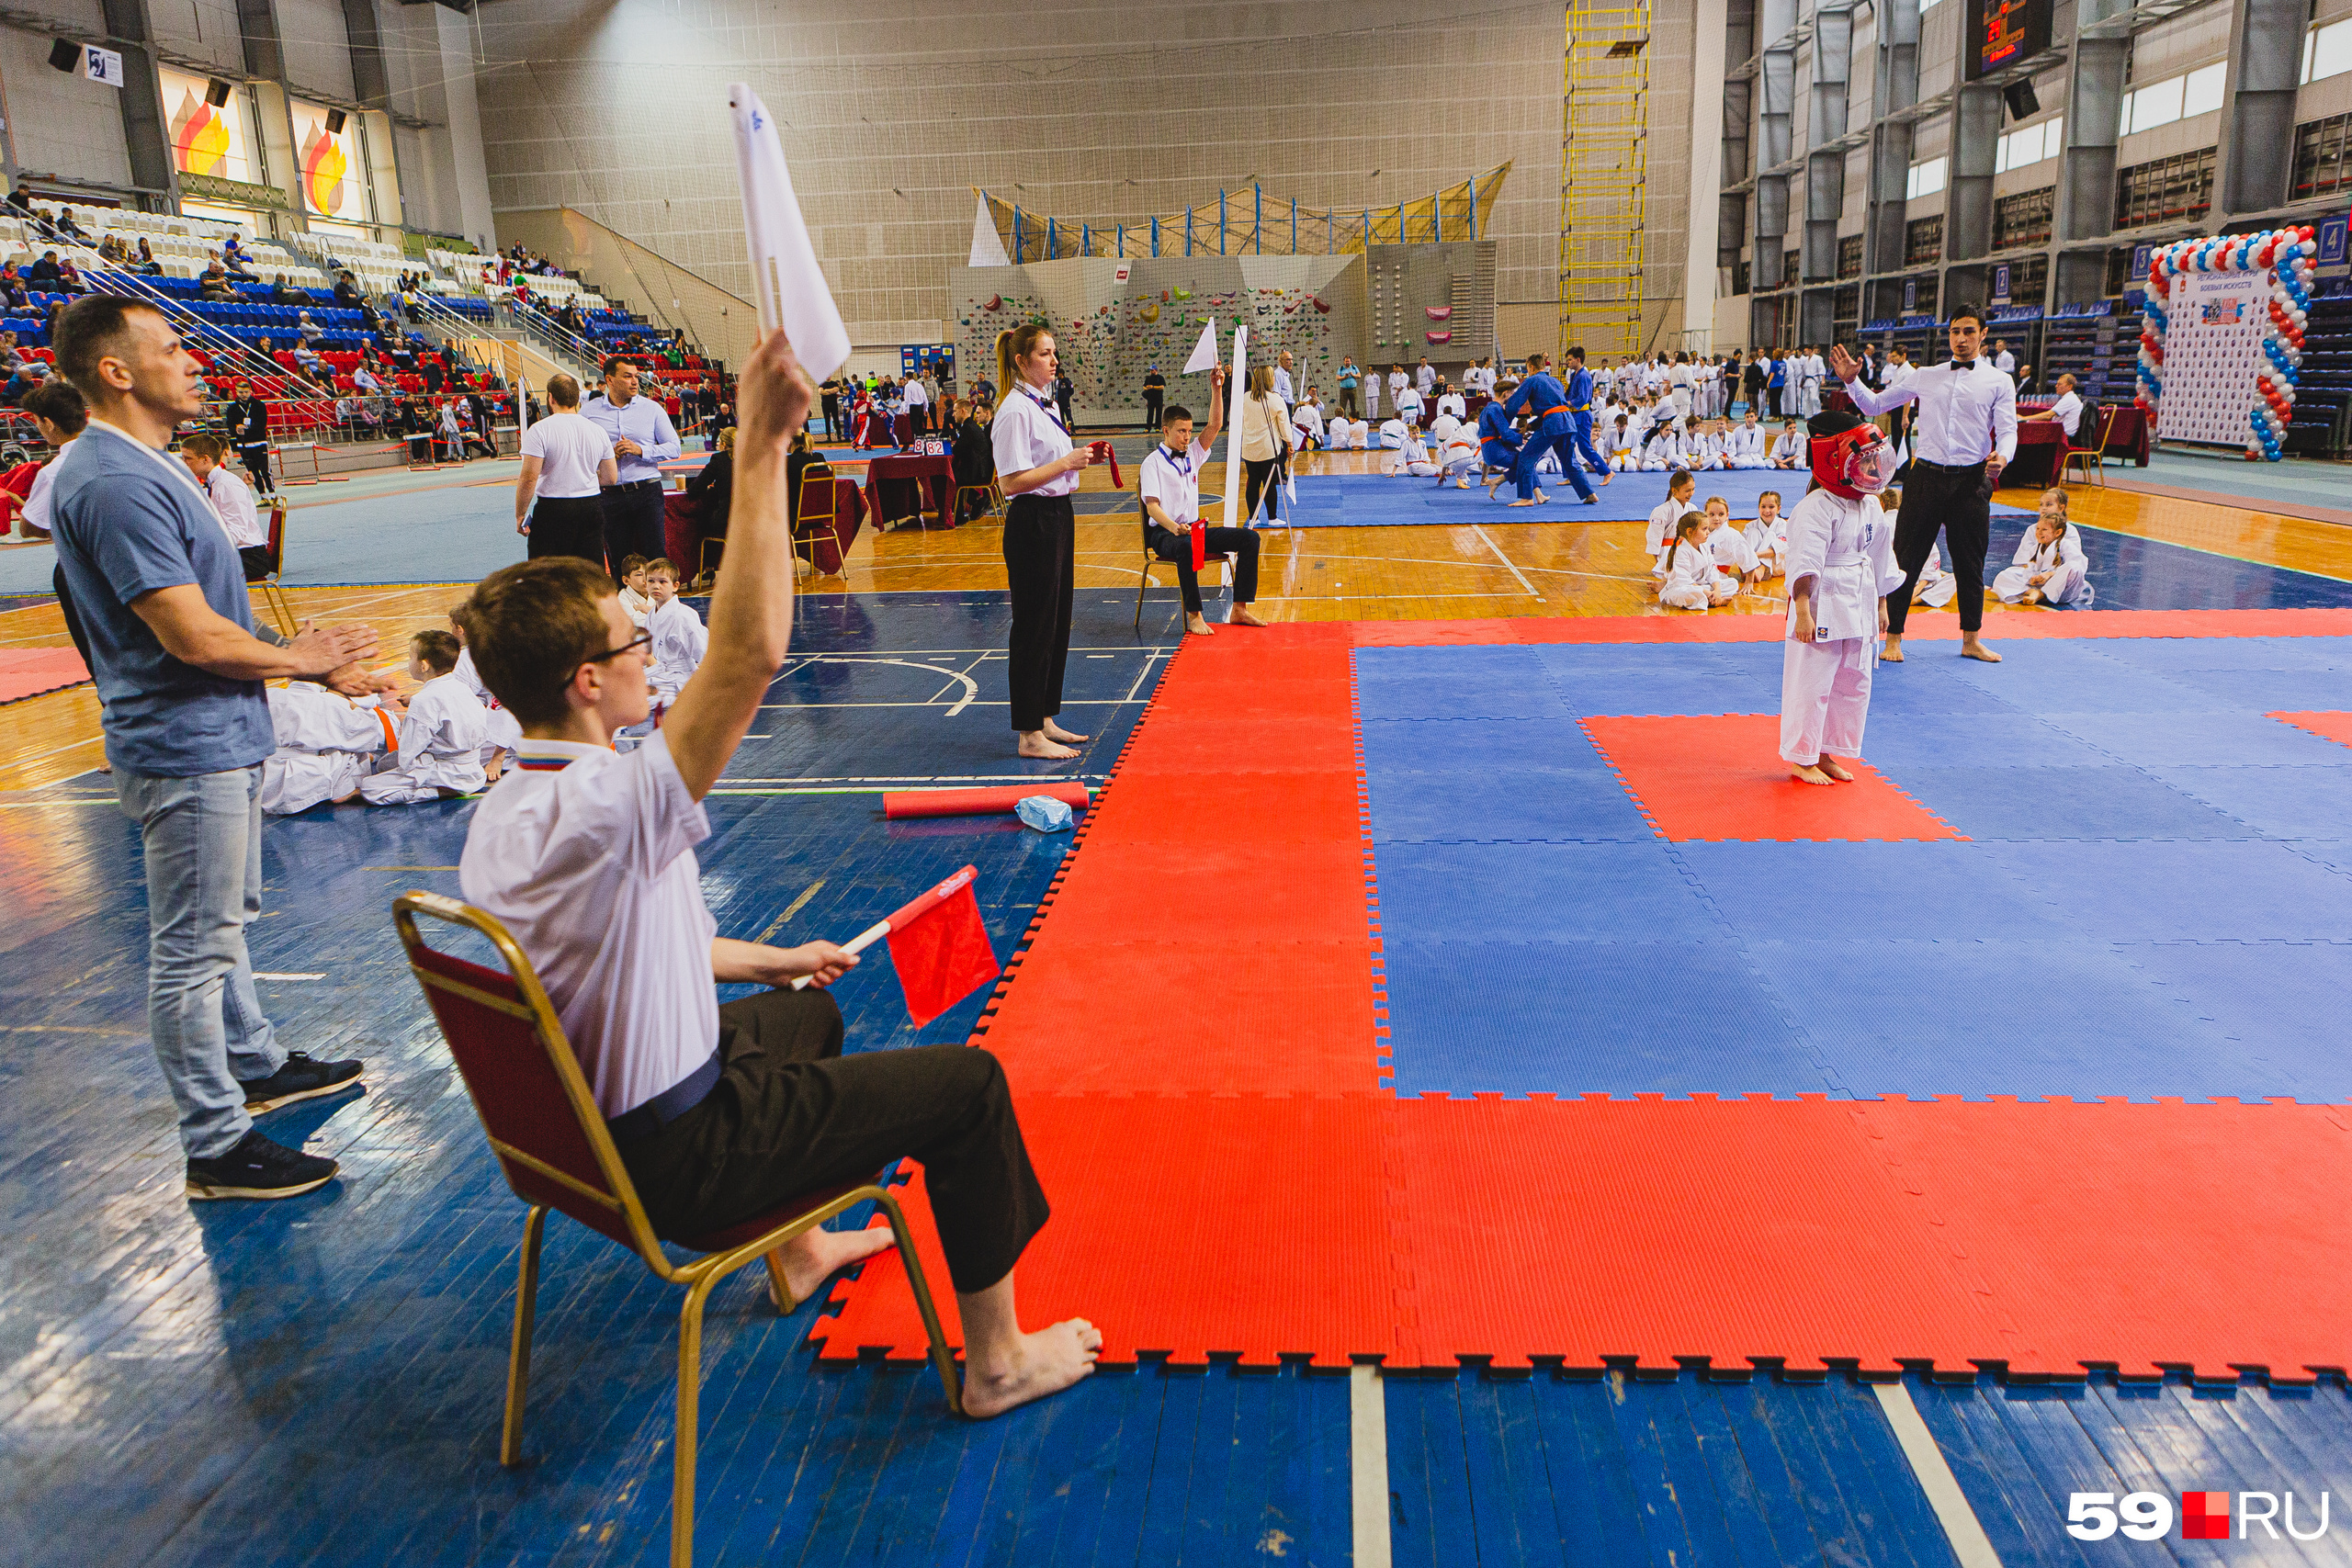 Соревнования проходили в СК Сухарева